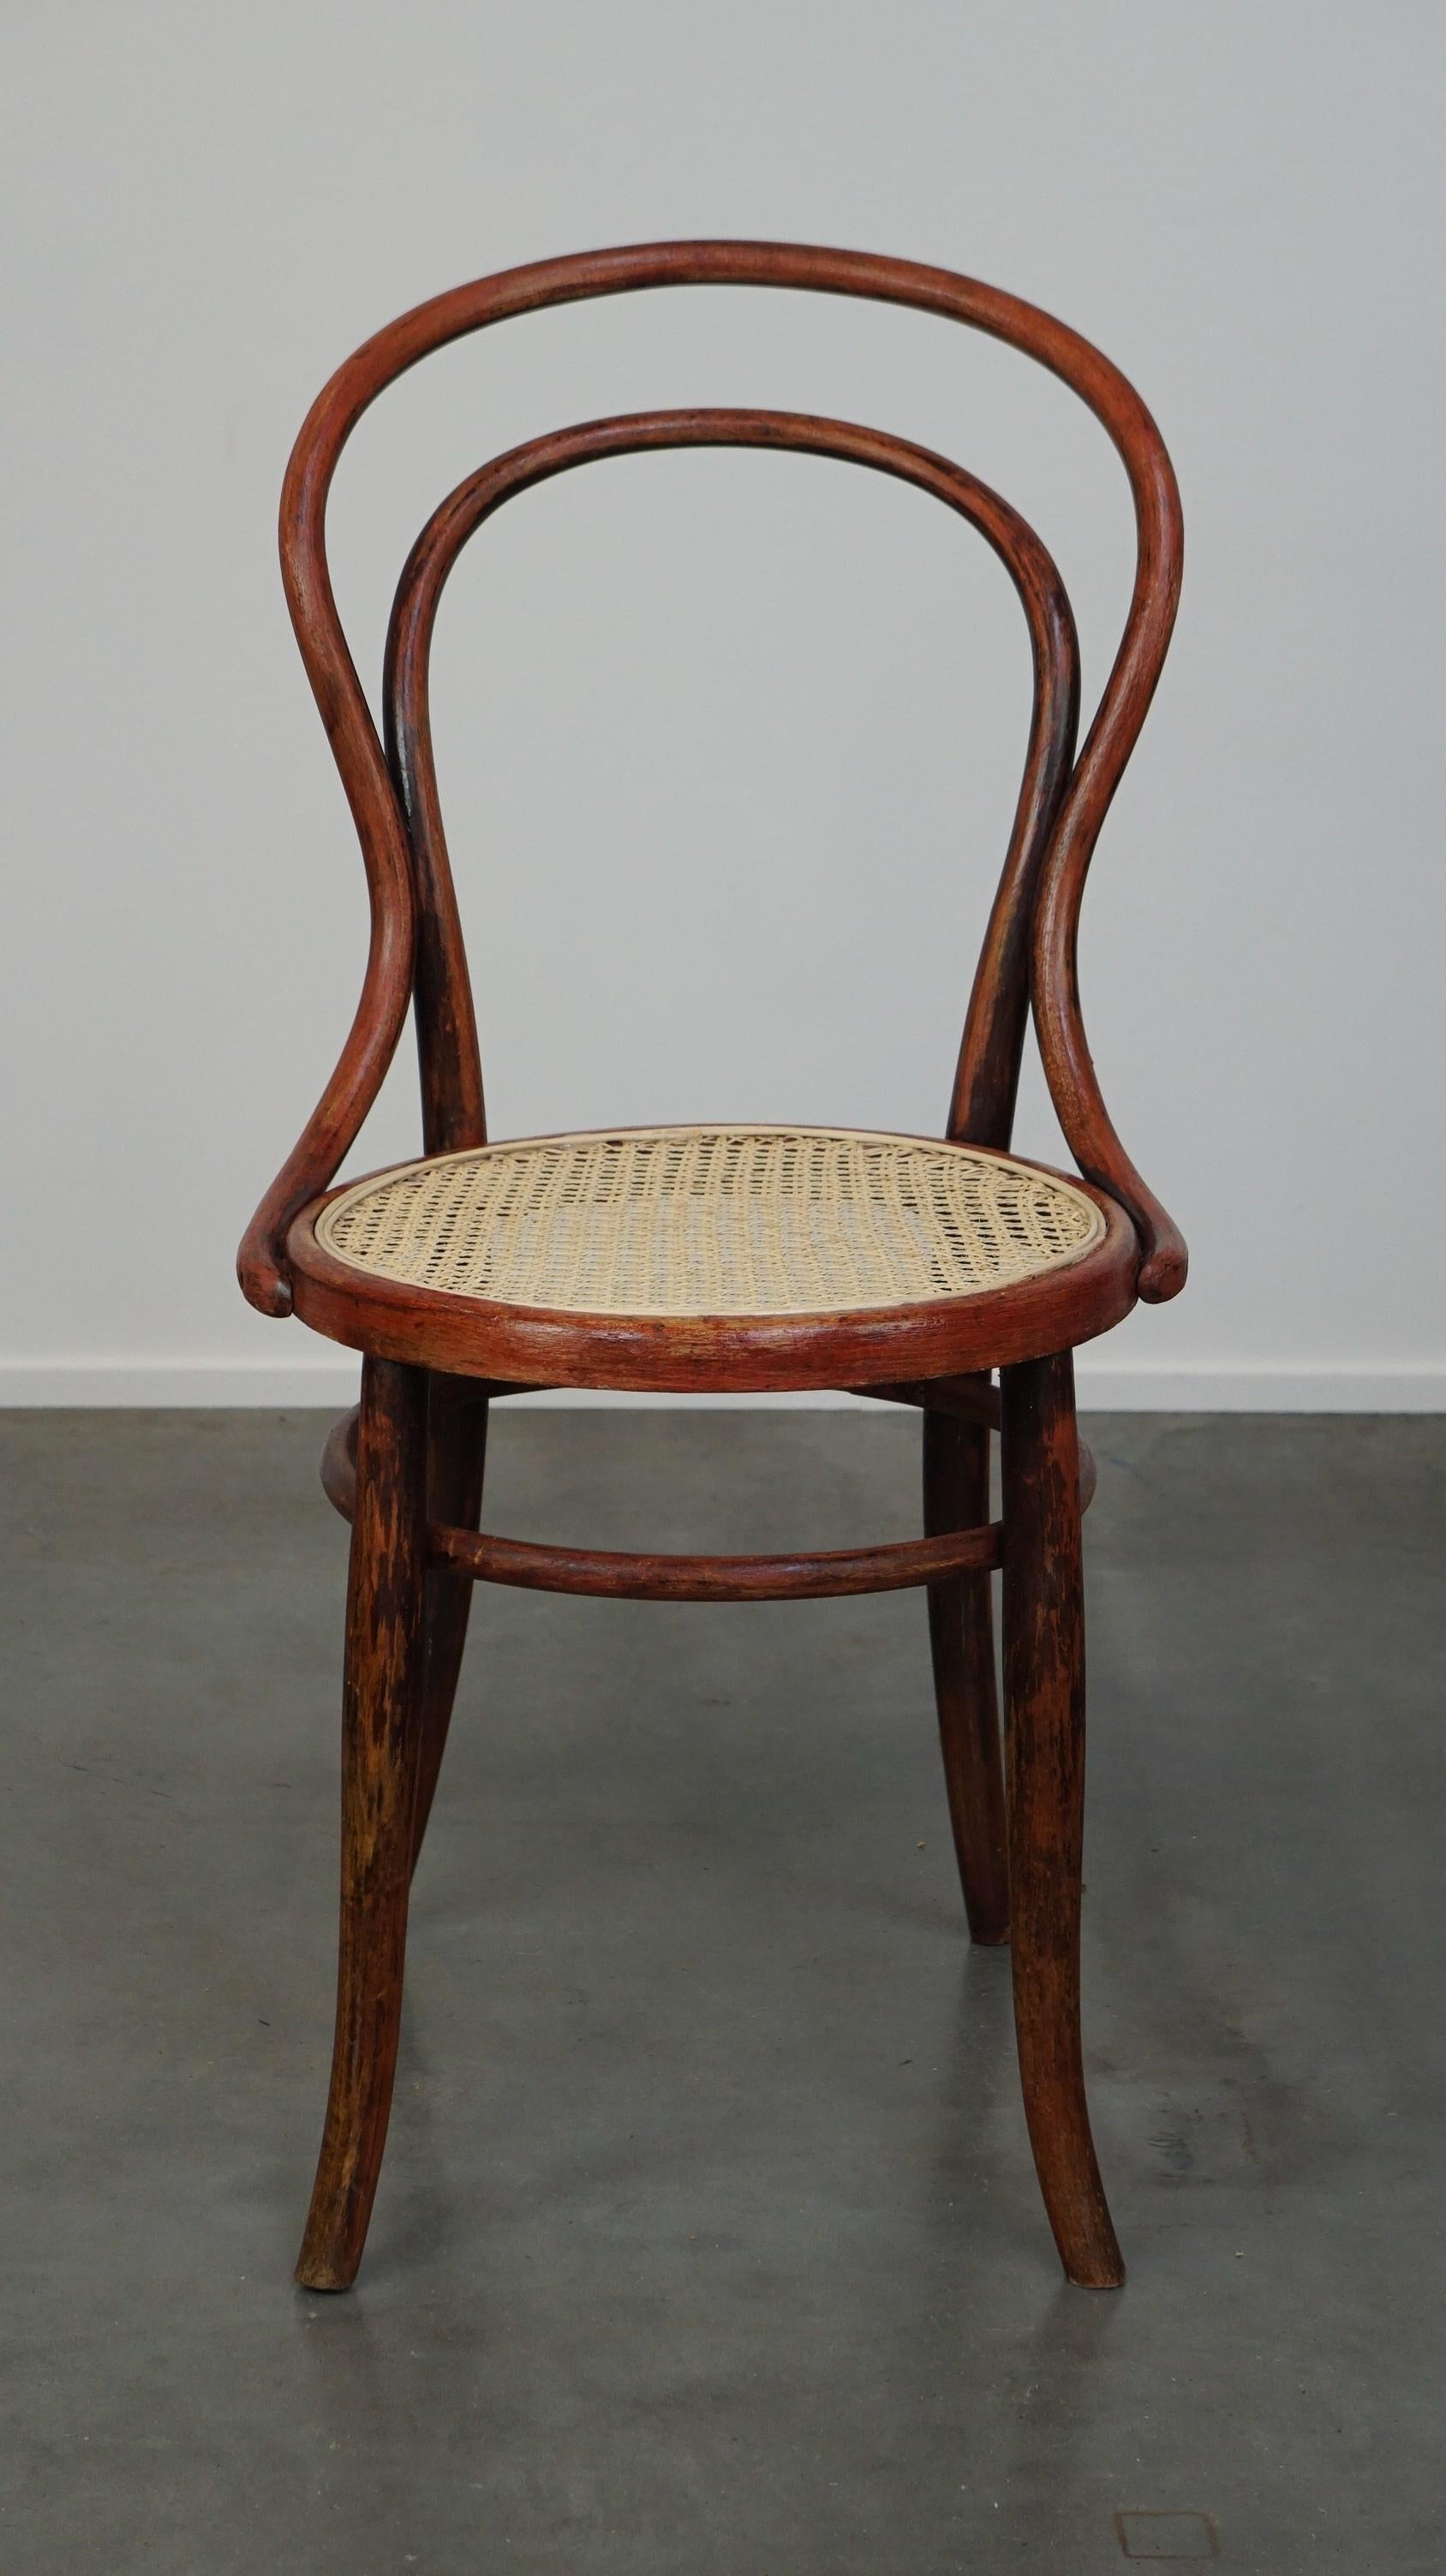 Der Stuhl Nr. 14, auch bekannt als Bistrostuhl, entworfen von Thonet, hergestellt von Fischel, war einer der beliebtesten Stühle von Thonet neben dem Stuhl Nr. 18. Er weist einen Halbbogen in der Rückenlehne auf und wurde wahrscheinlich um 1900